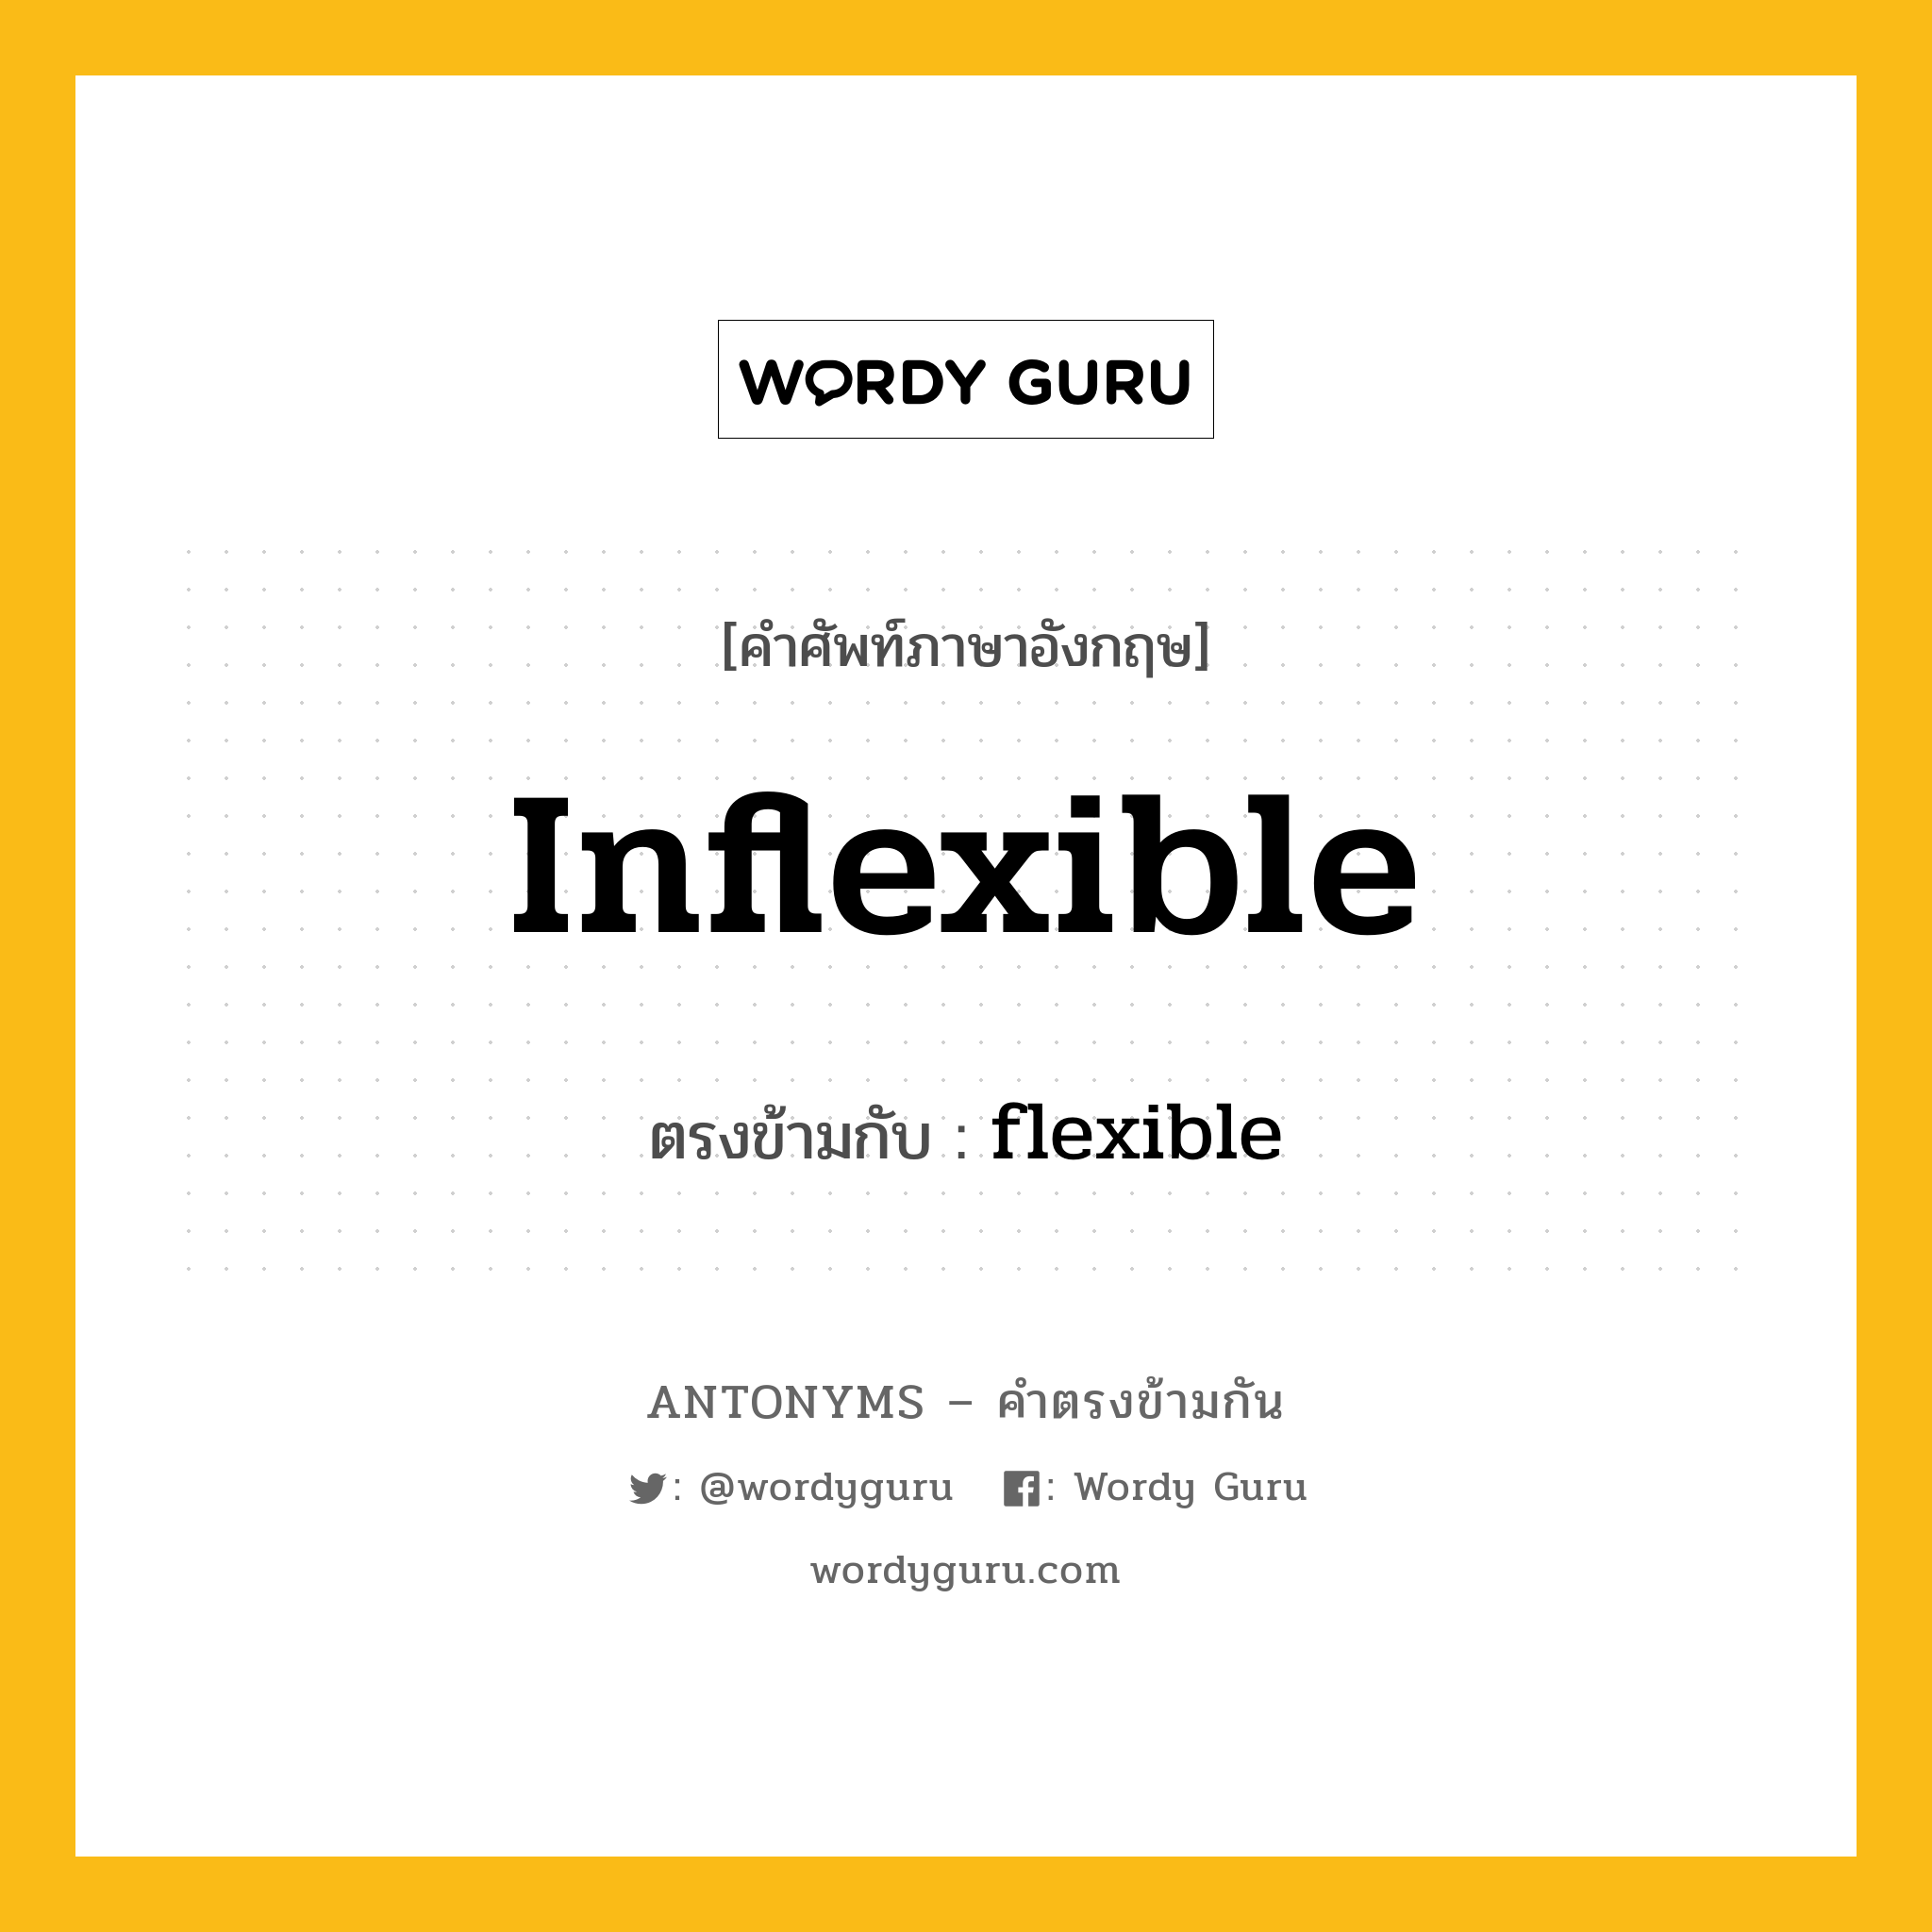 inflexible เป็นคำตรงข้ามกับคำไหนบ้าง?, คำศัพท์ภาษาอังกฤษ inflexible ตรงข้ามกับ flexible หมวด flexible